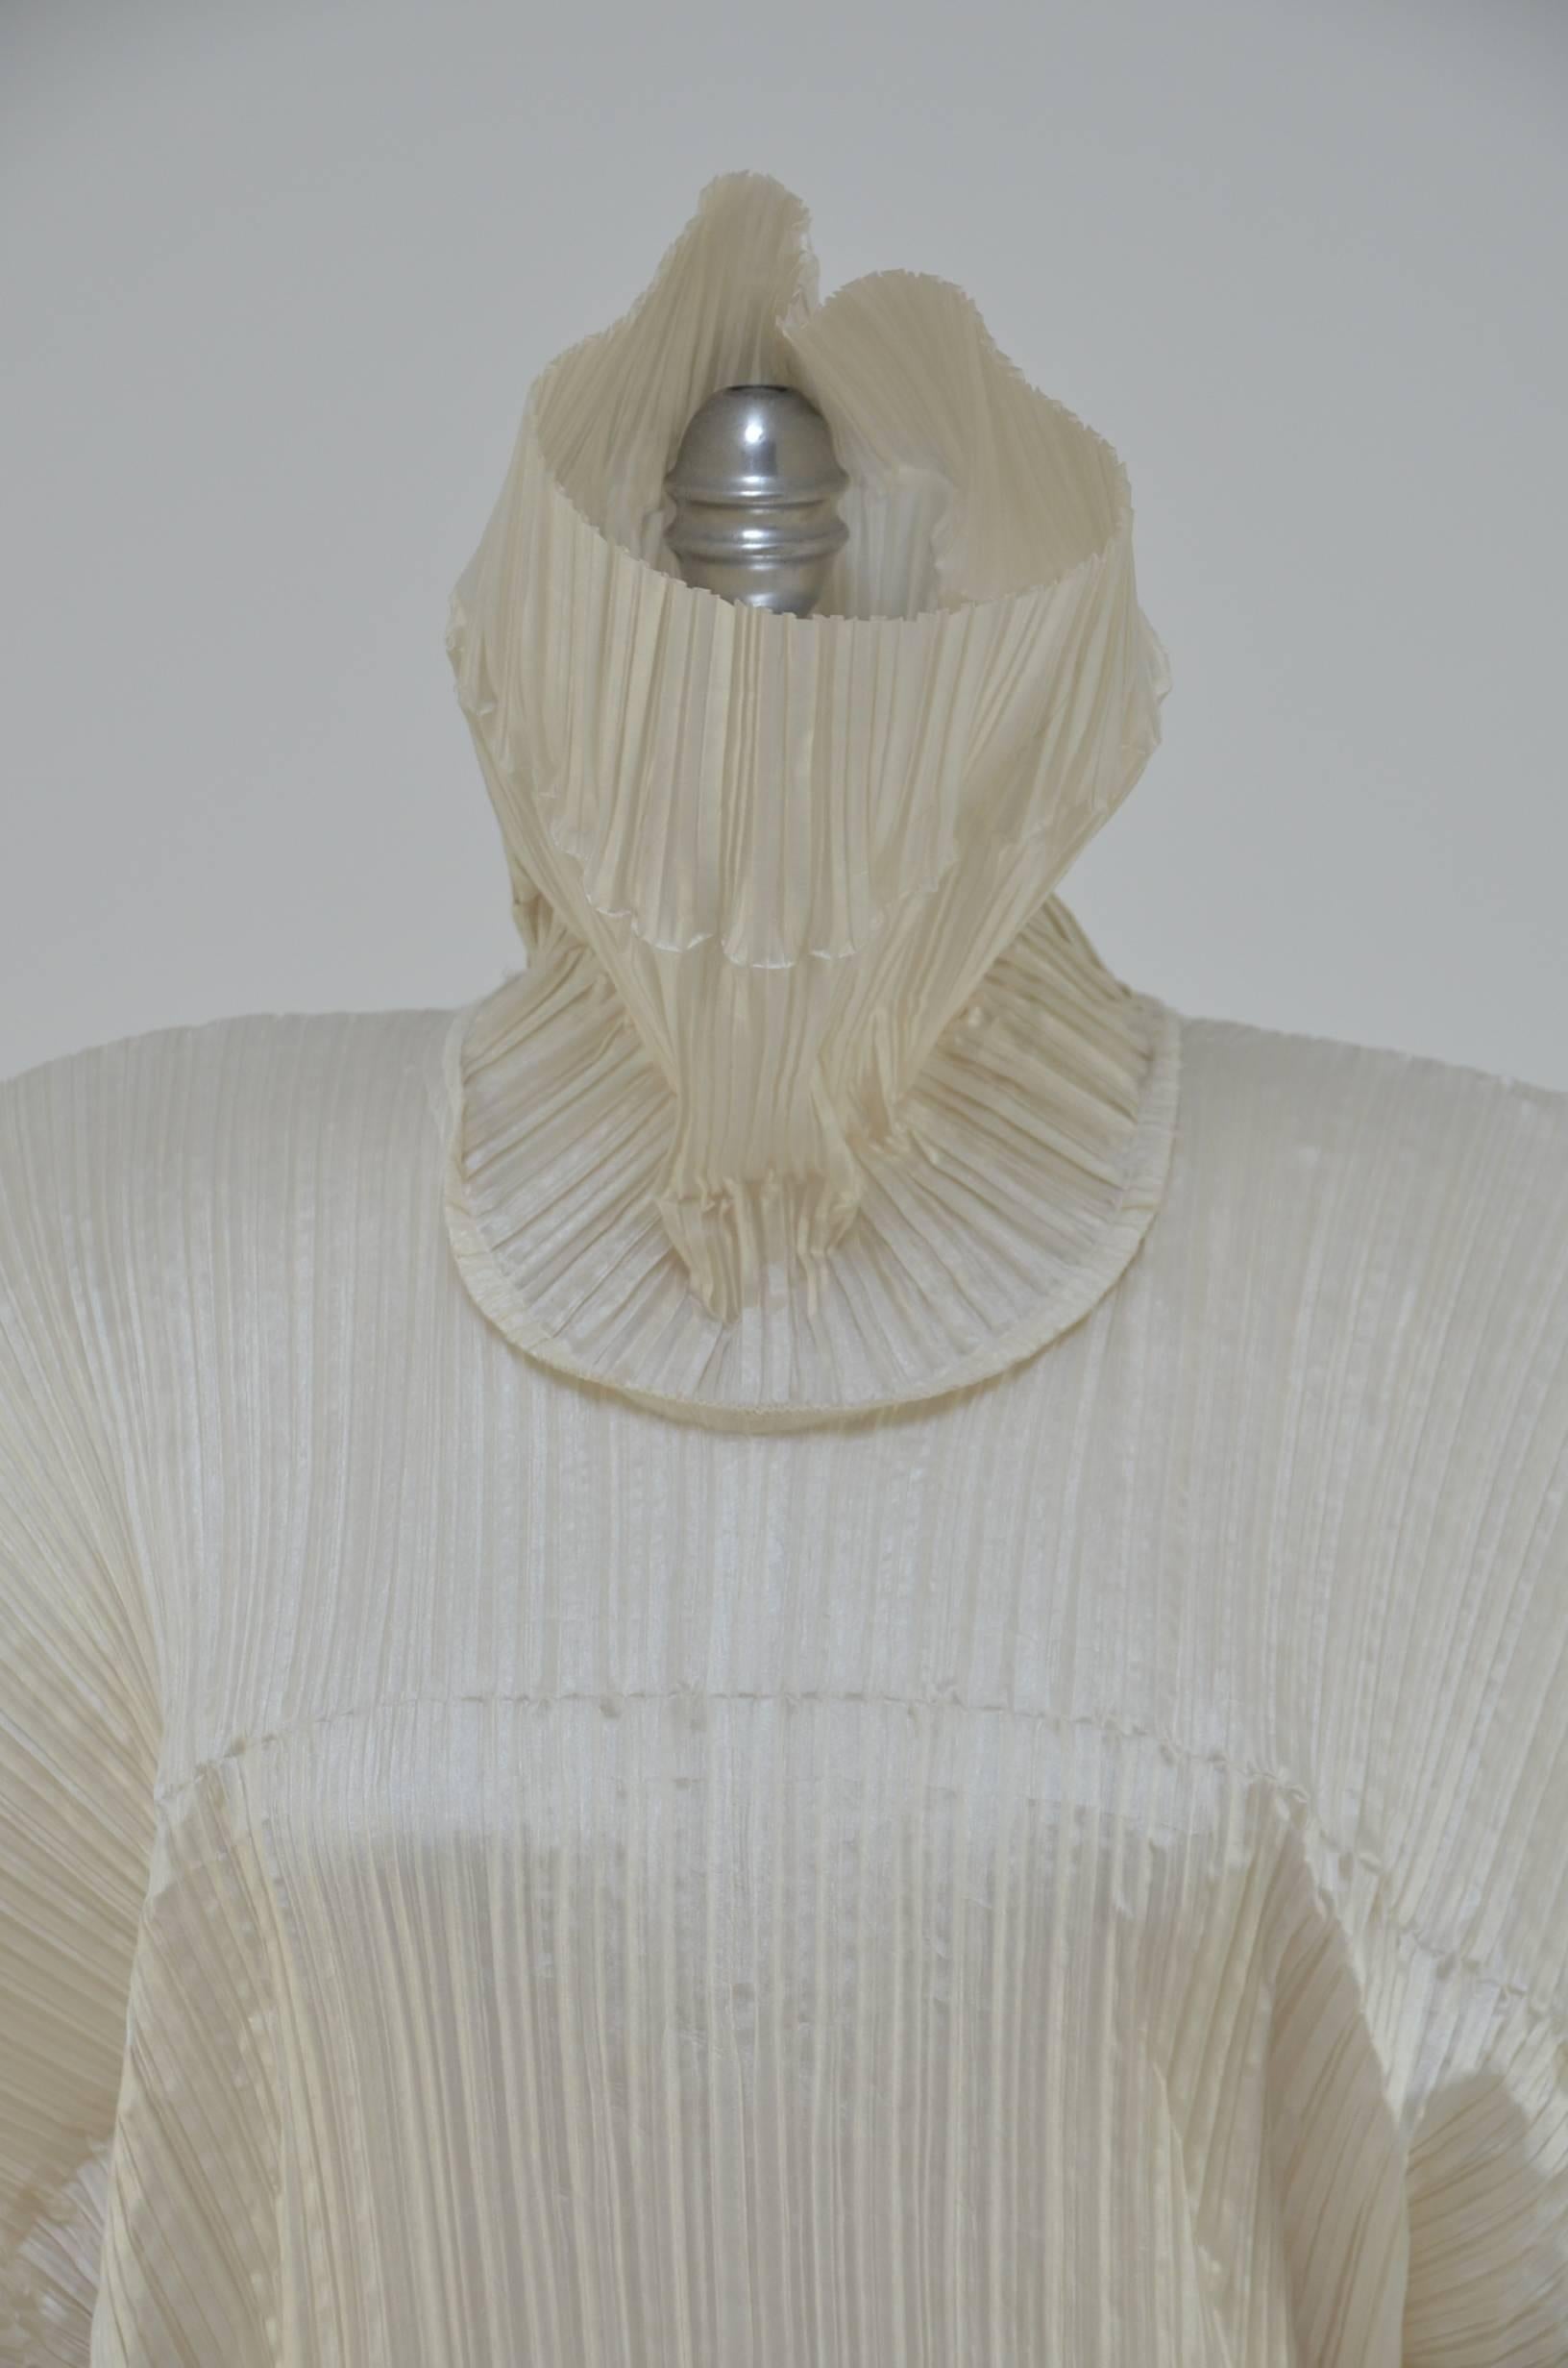 Issey Miyake Bamboo Collection Dress Runway  1989 NY Metropolitan Museum  2